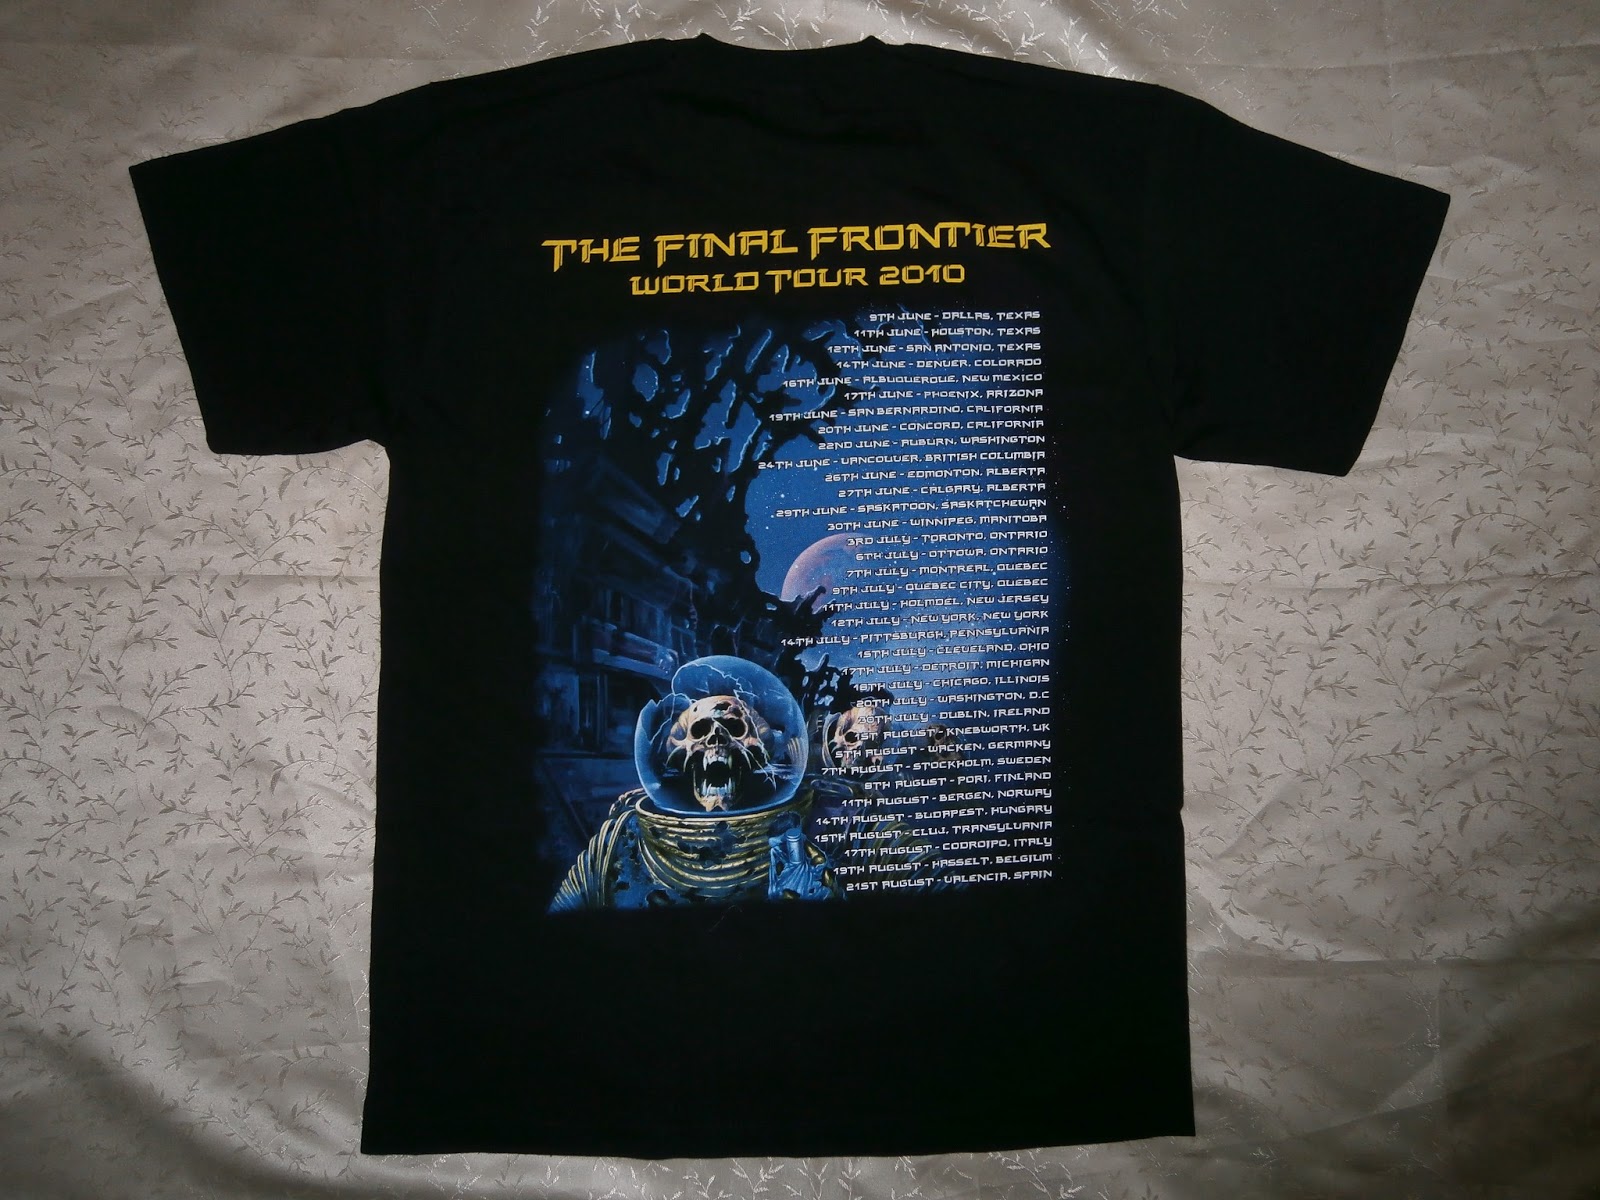 Koleksi Biasa: New T-shirt Iron Maiden Final Frontier Tour 2010